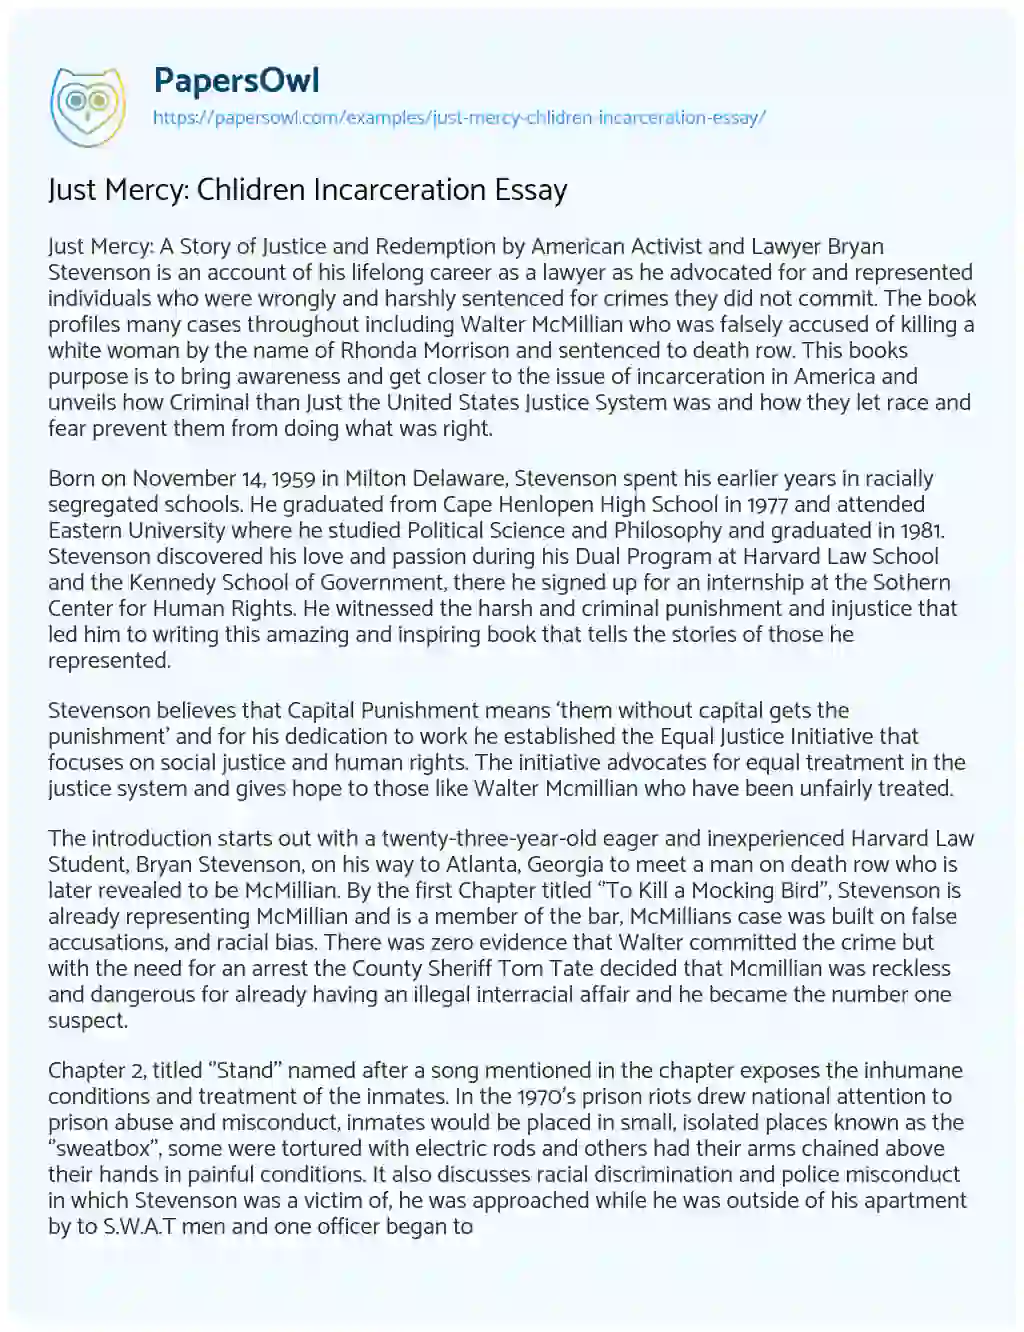 Essay on Just Mercy: Chlidren Incarceration Essay